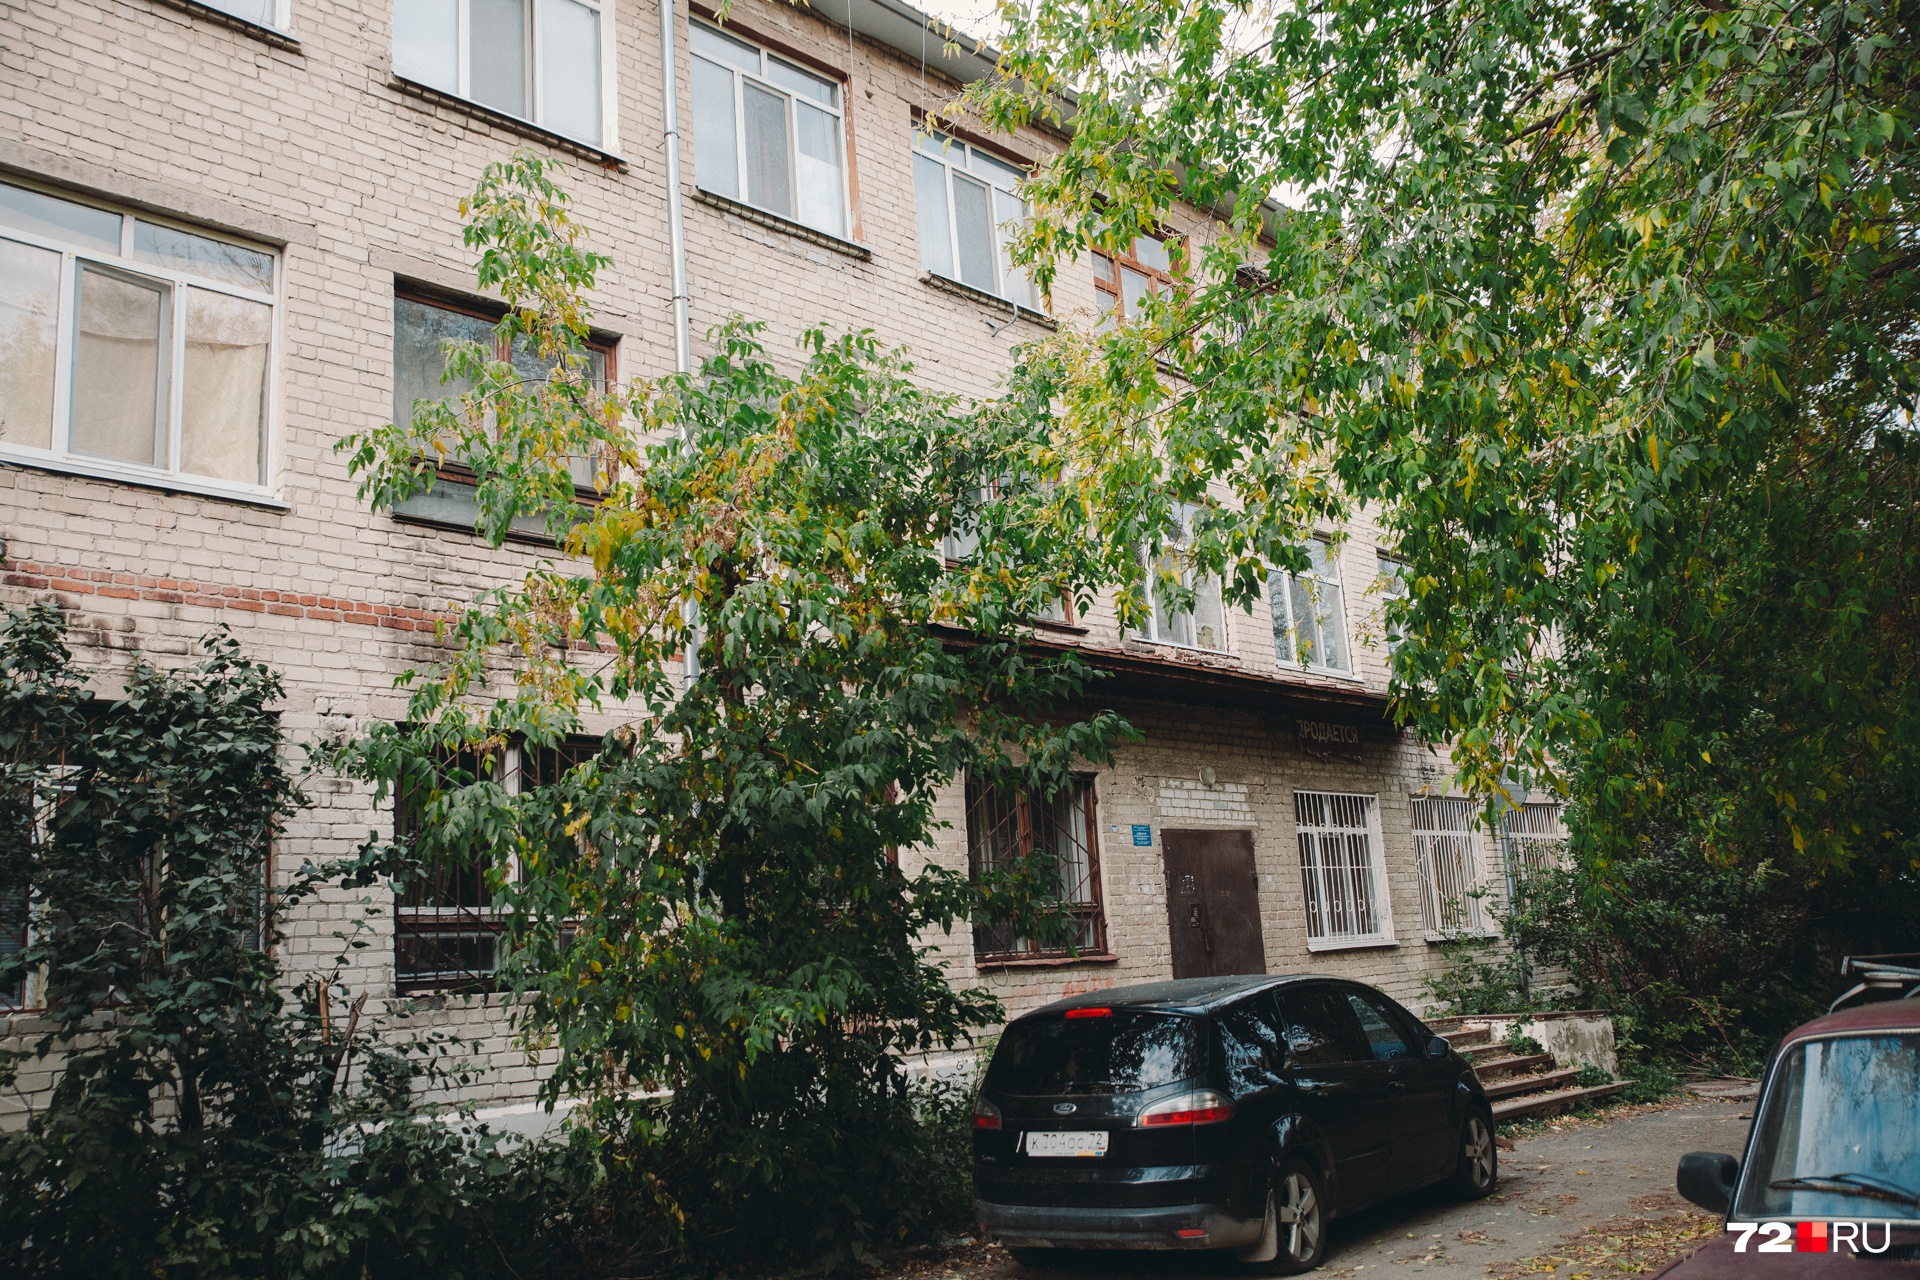 Пристанская, 3. Увесистая железная дверь призвана защищать жильцов общежития от непрошеных гостей в подъезде